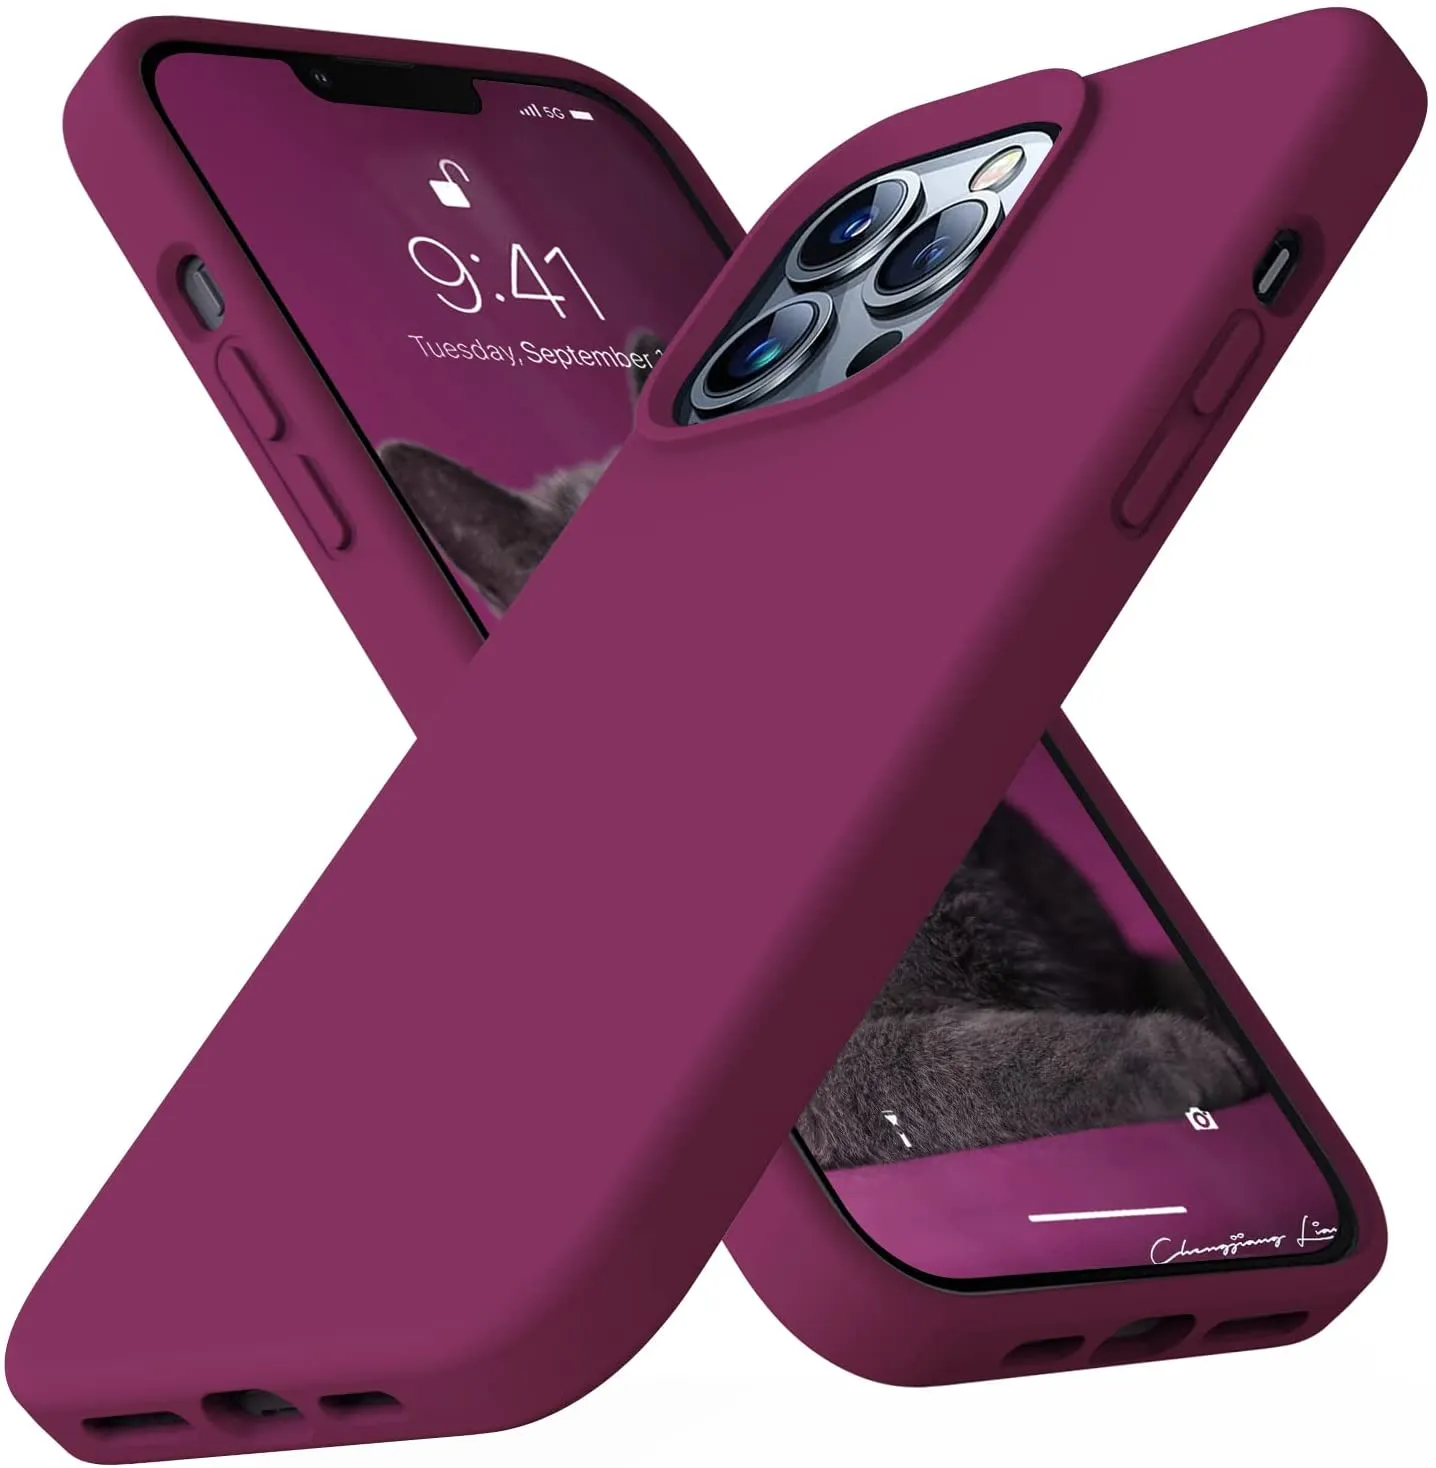 Cilt Yumuşak Sıvı Silikon Cep Telefon Kılıfları İPhone 11 12 13 14 Pro Max XR X 7 8 Paket ile İnce Şok geçirmez koruyucu kapak